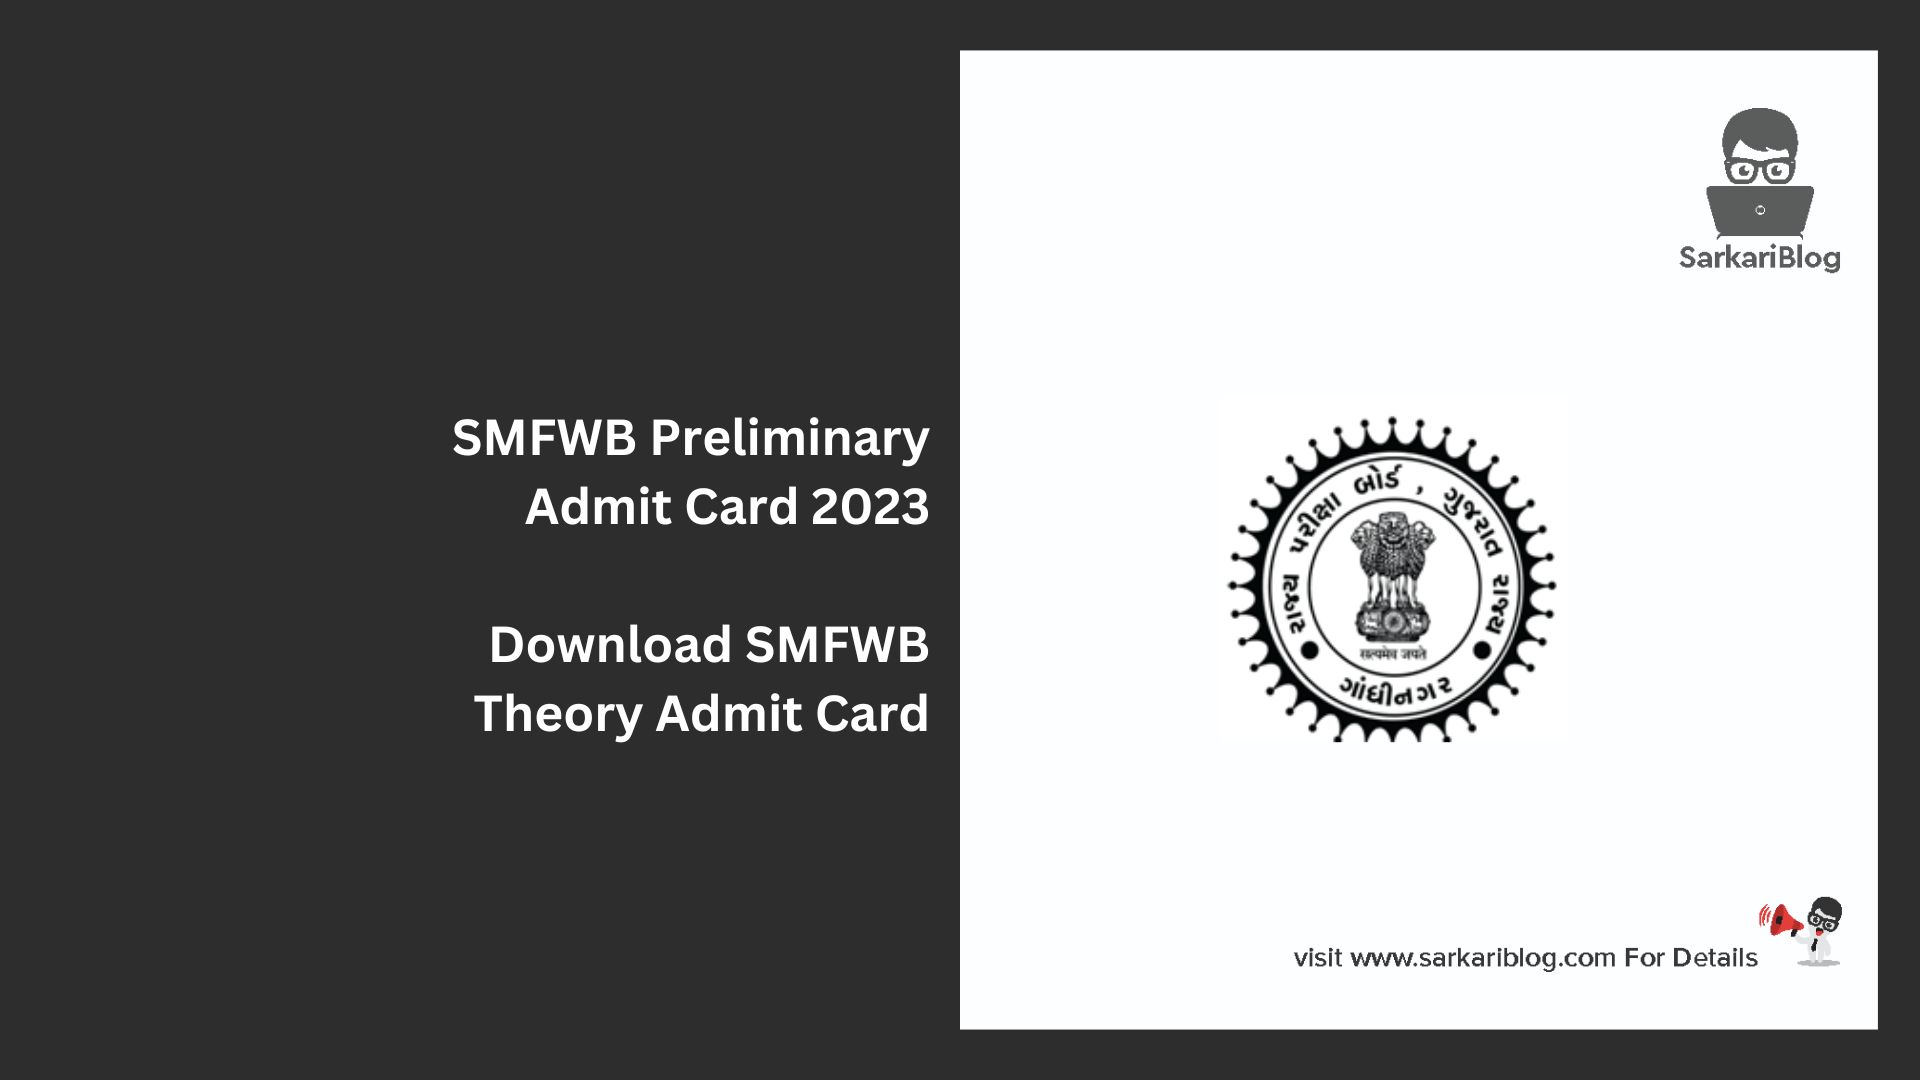 SMFWB Preliminary Admit Card 2023